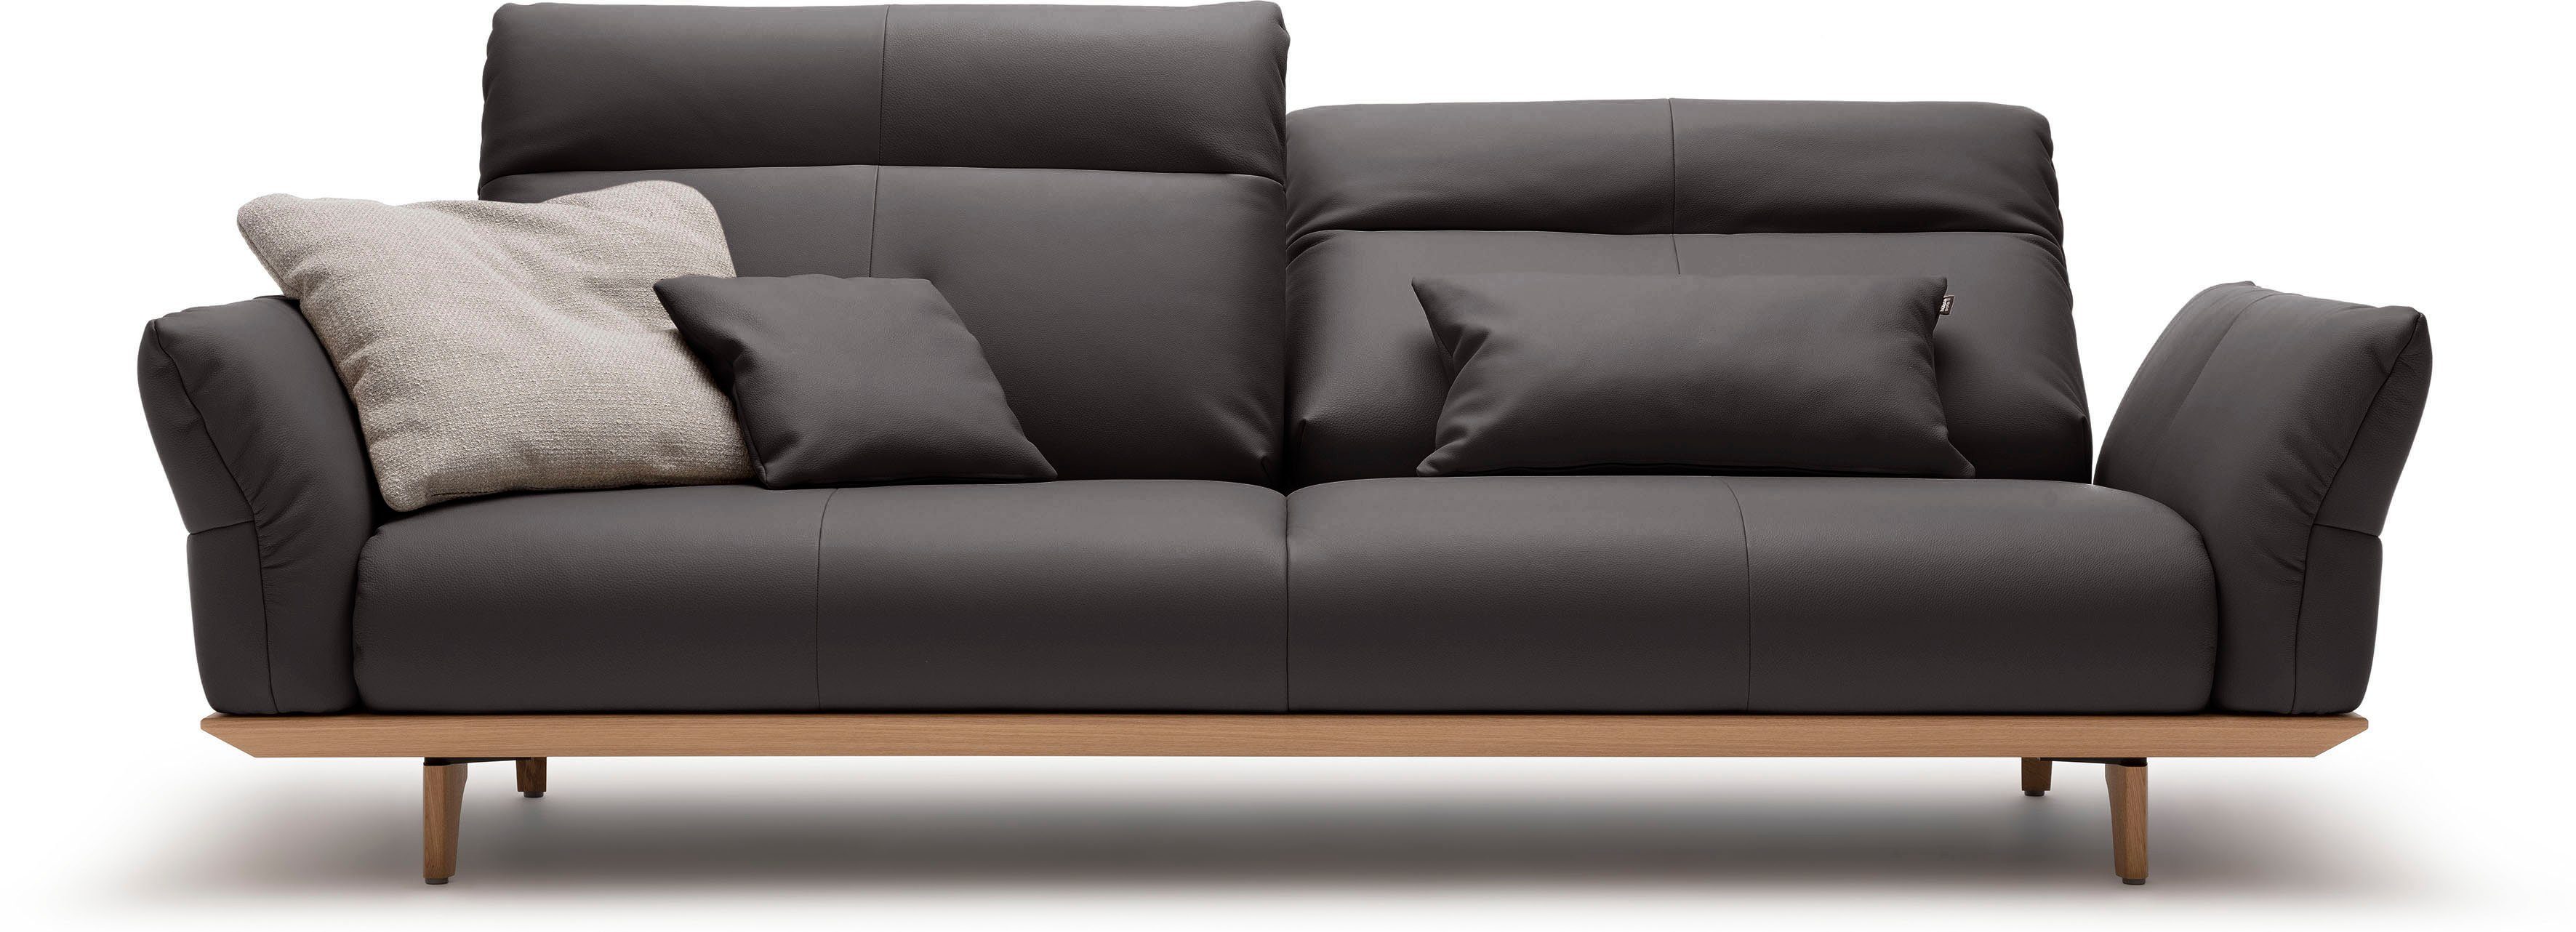 Eiche, cm 3,5-Sitzer hülsta Eiche Breite Sockel in sofa natur, Füße hs.460, 228